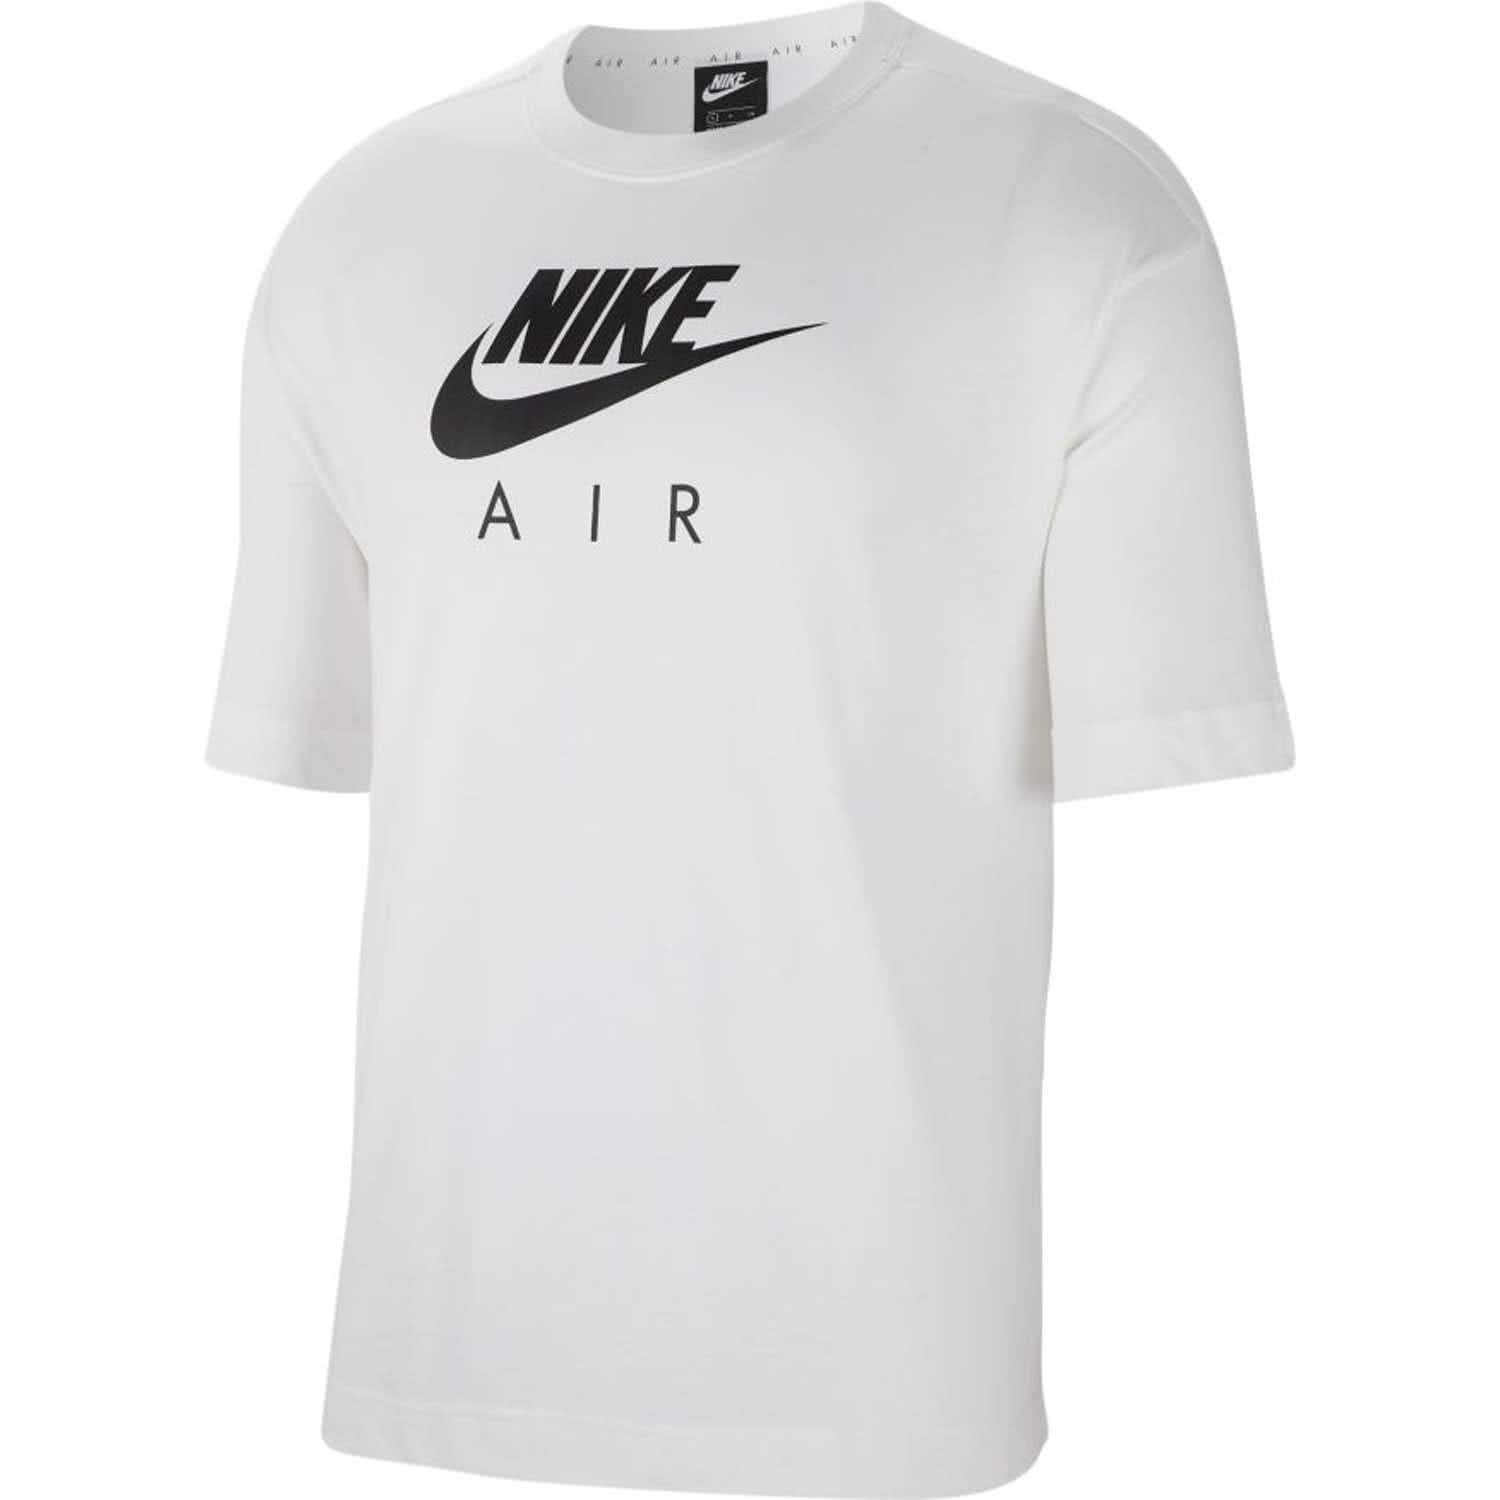 Nike T-Shirt Damen